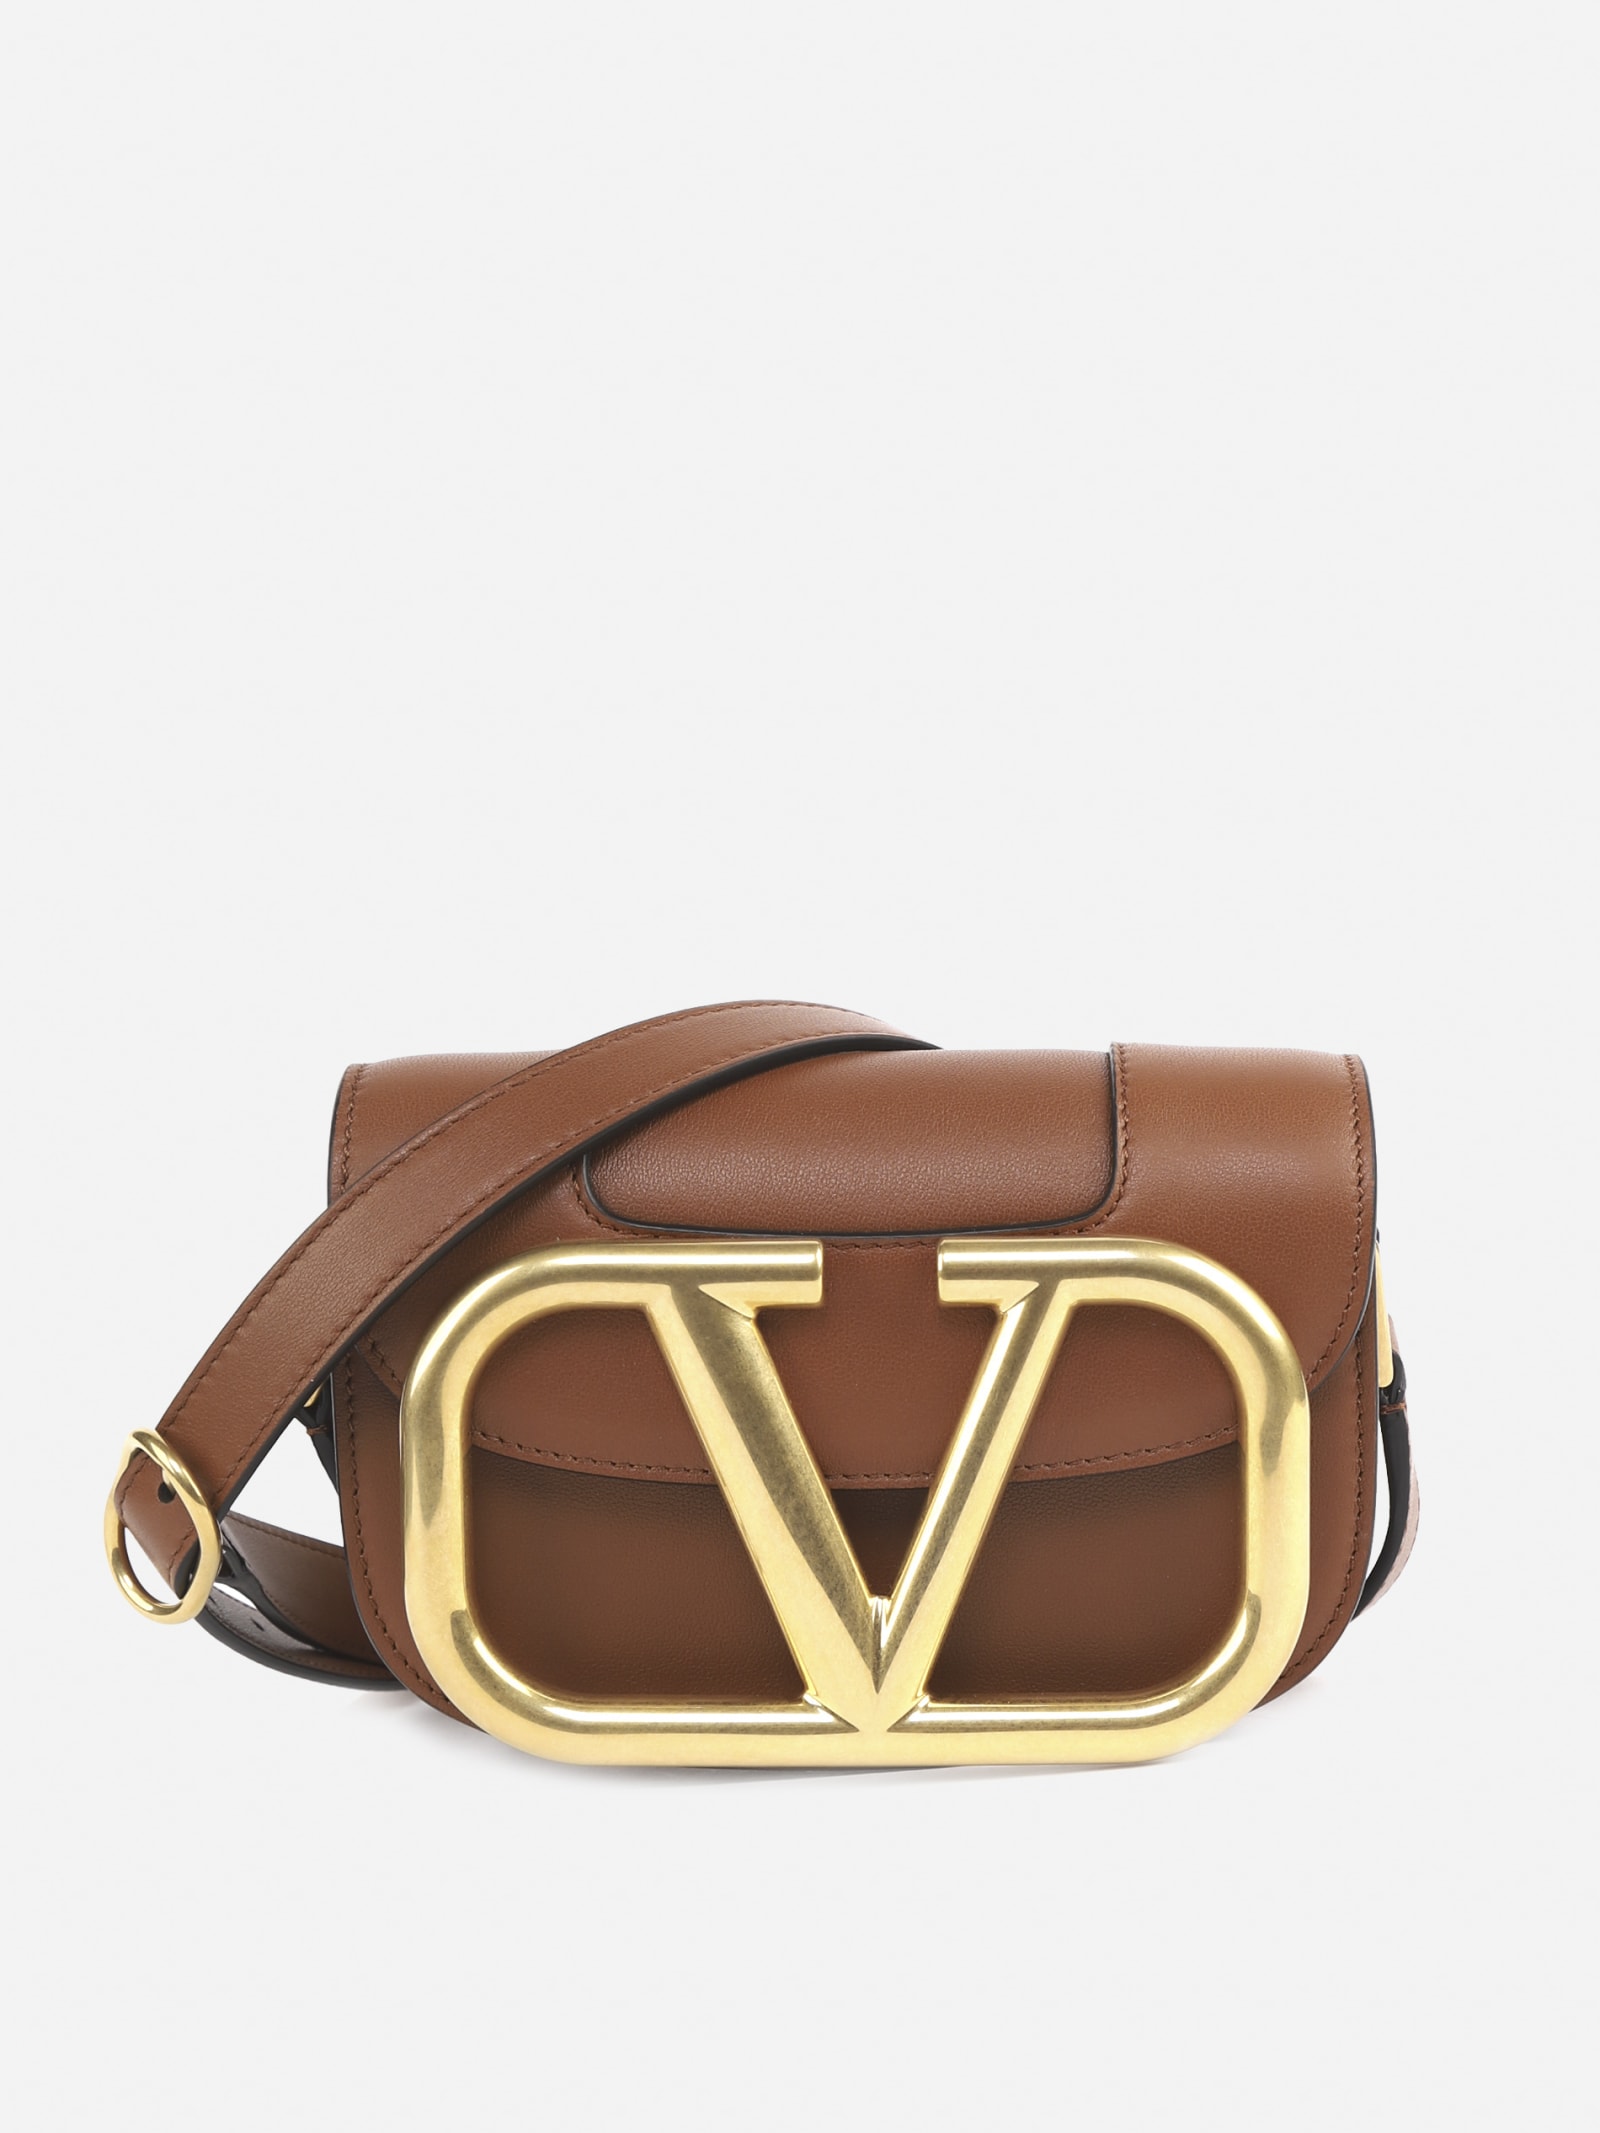 Valentino Garavani Supervee Leather Shoulder Bag